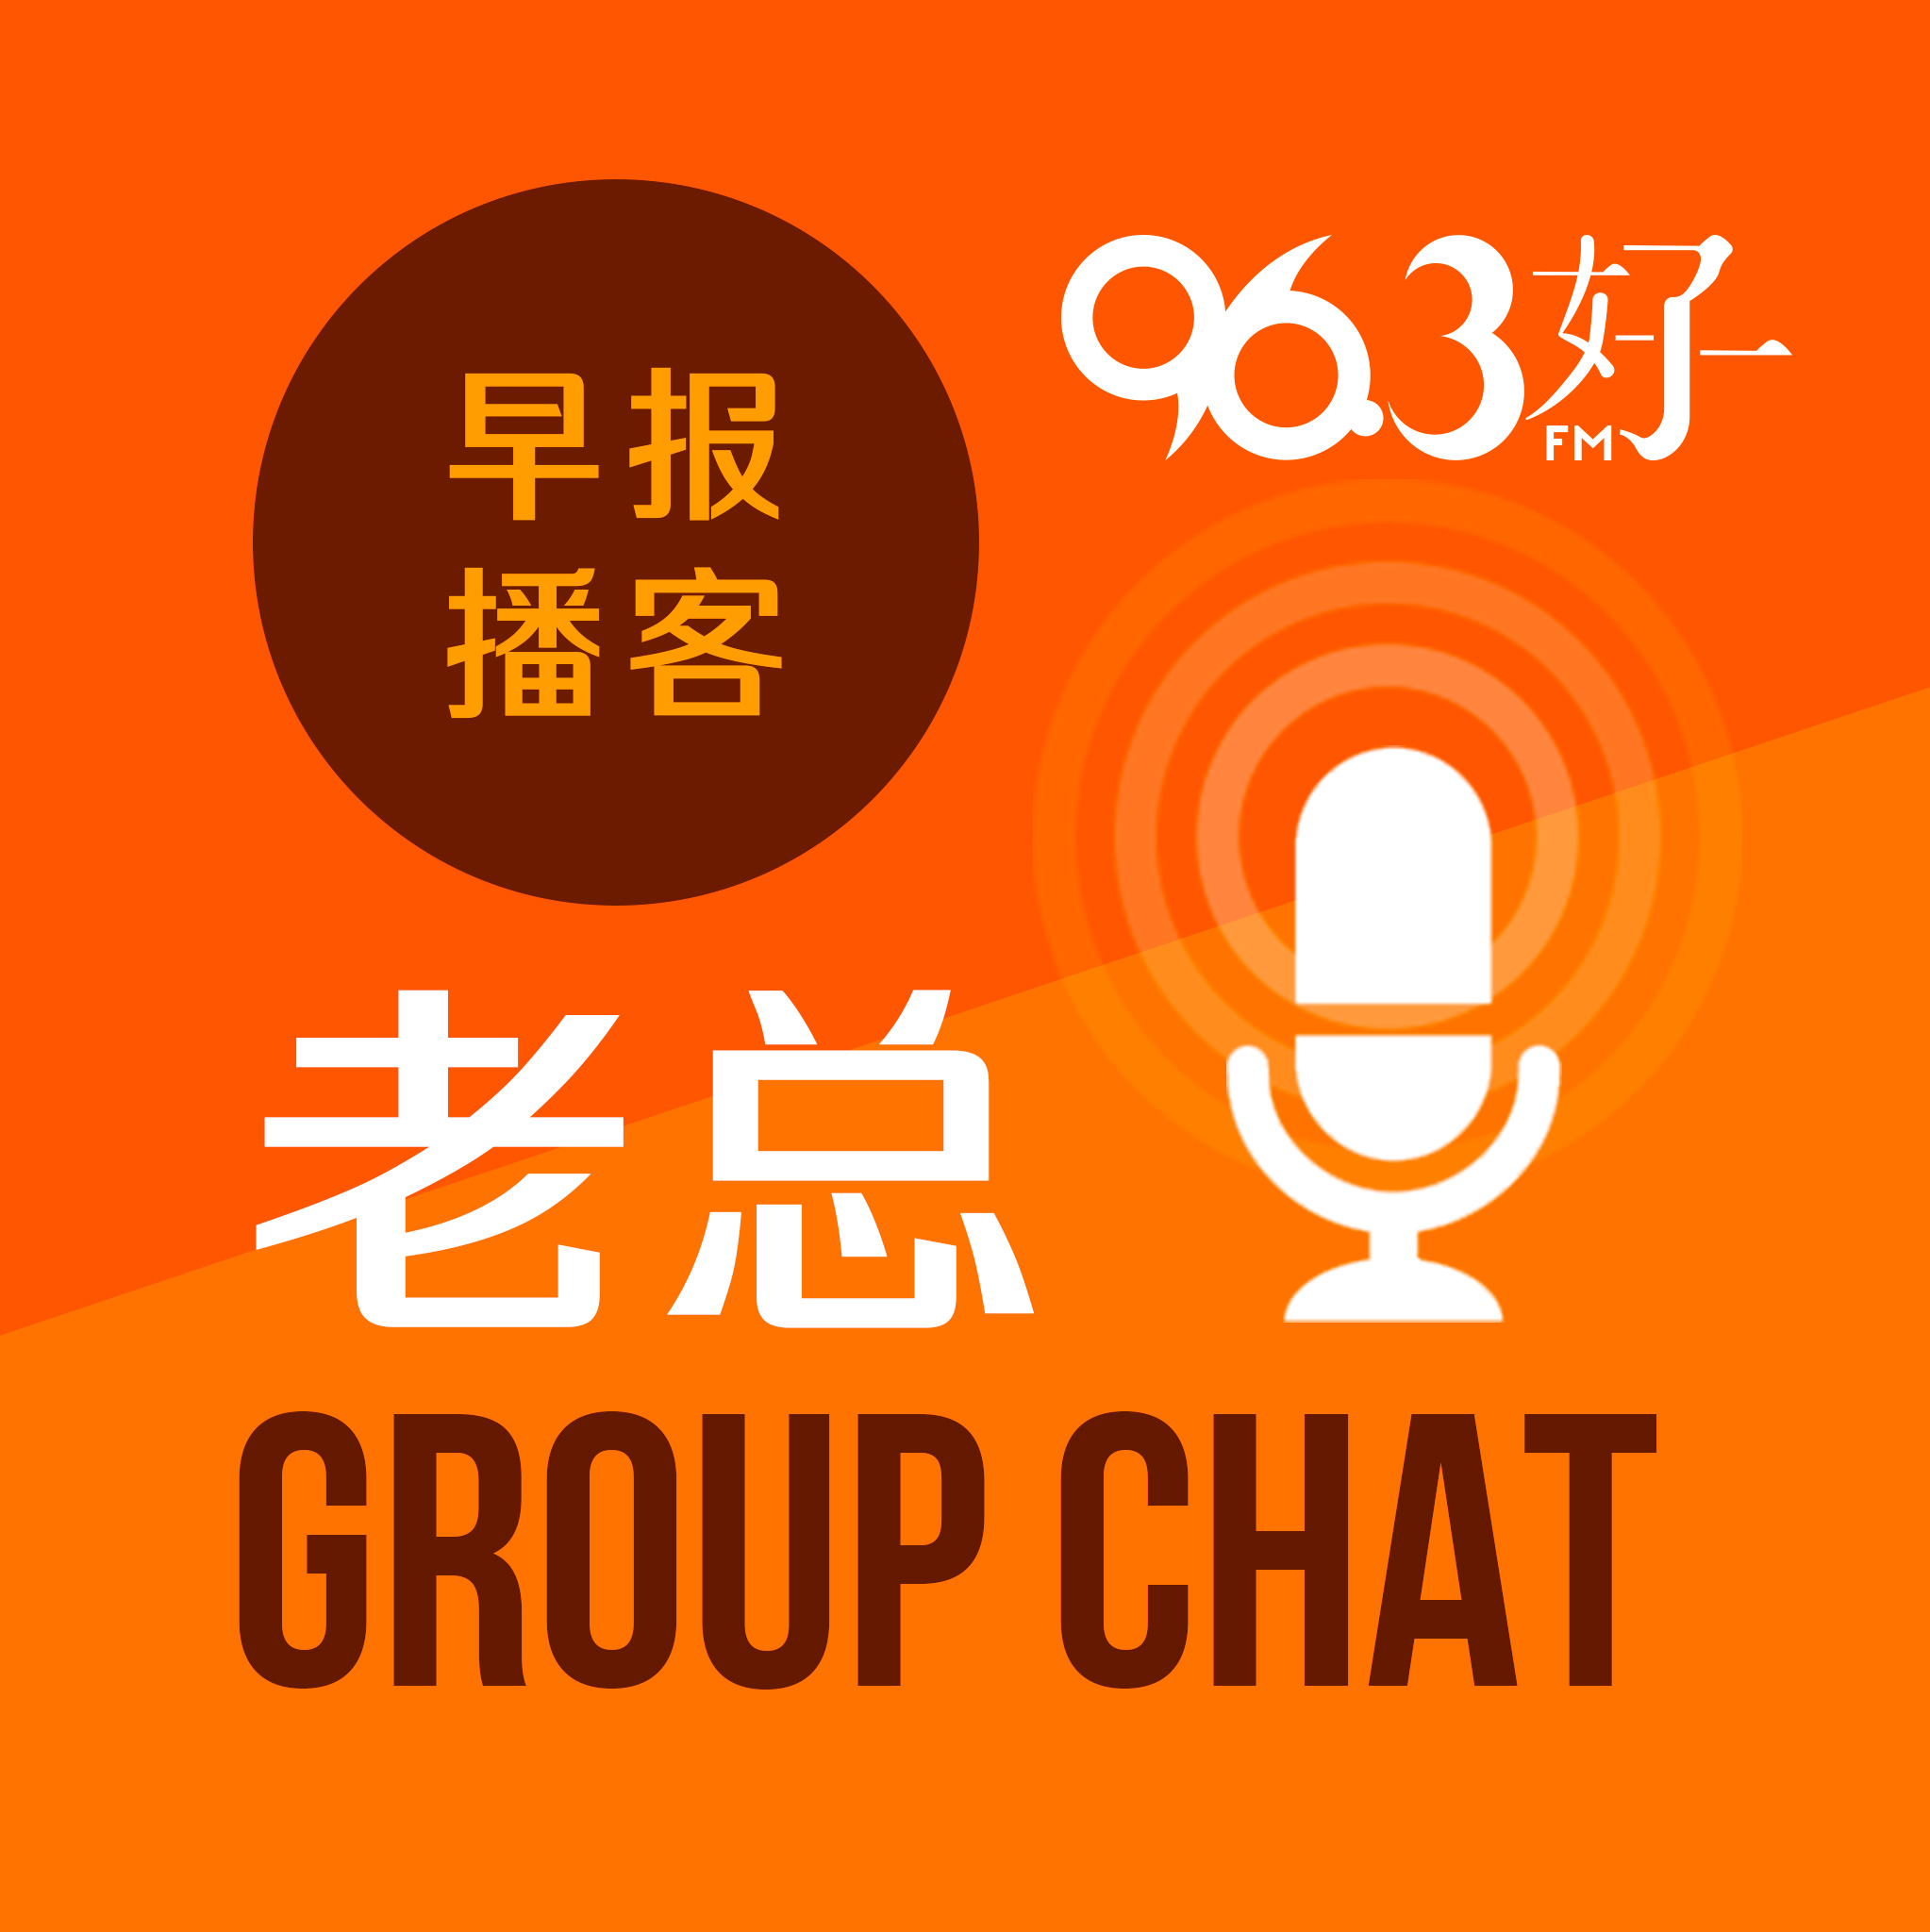 9月3日《老总 Group Chat》 ：市镇会禁止代步工具在组屋底层使用